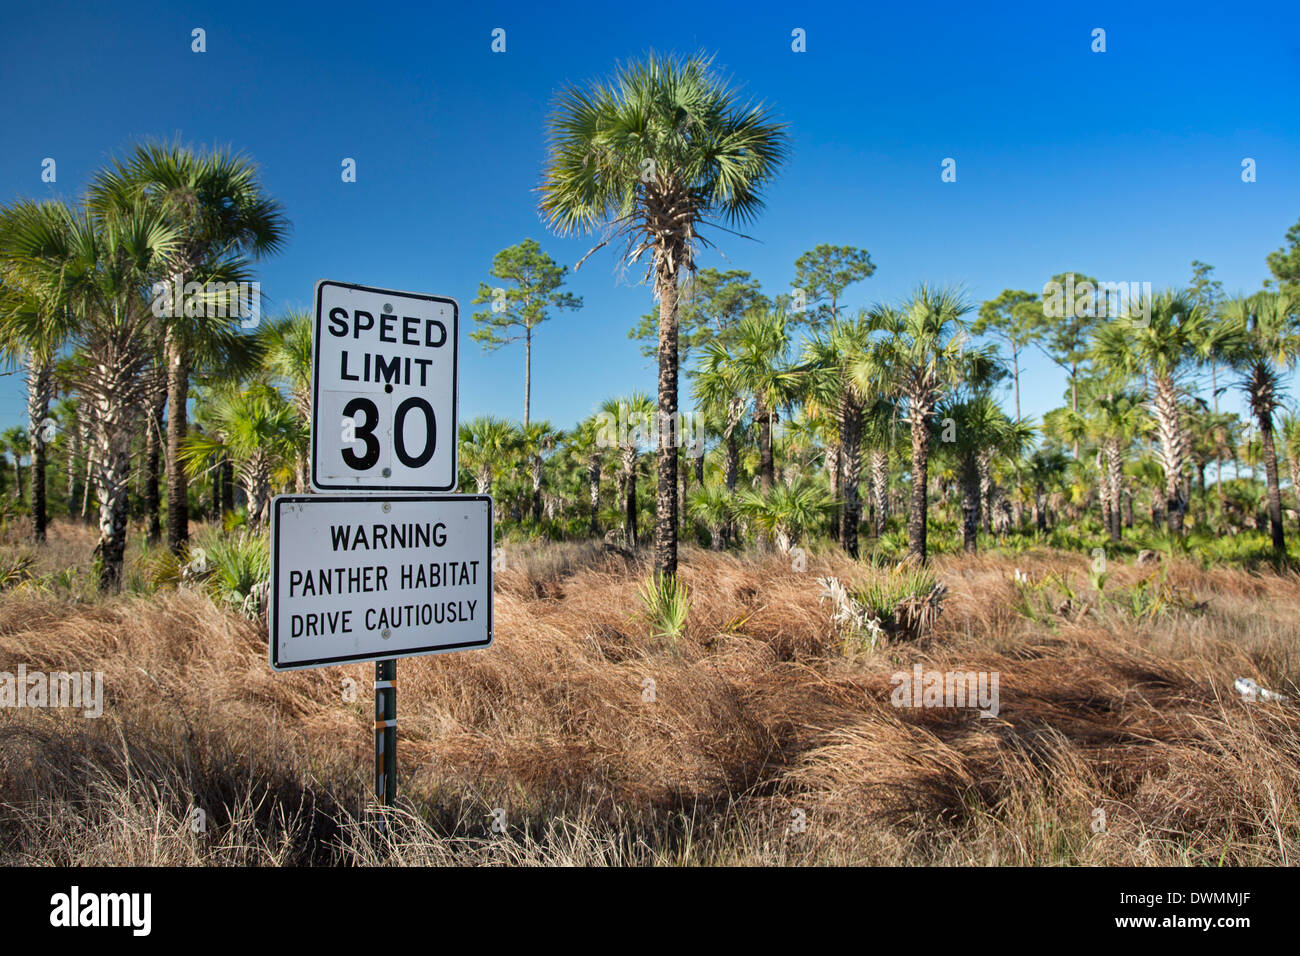 Un panneau routier dans la Picayune Strand State Forest prévient les conducteurs à conduire avec prudence pour protéger les espèces en Florida Panther. Banque D'Images